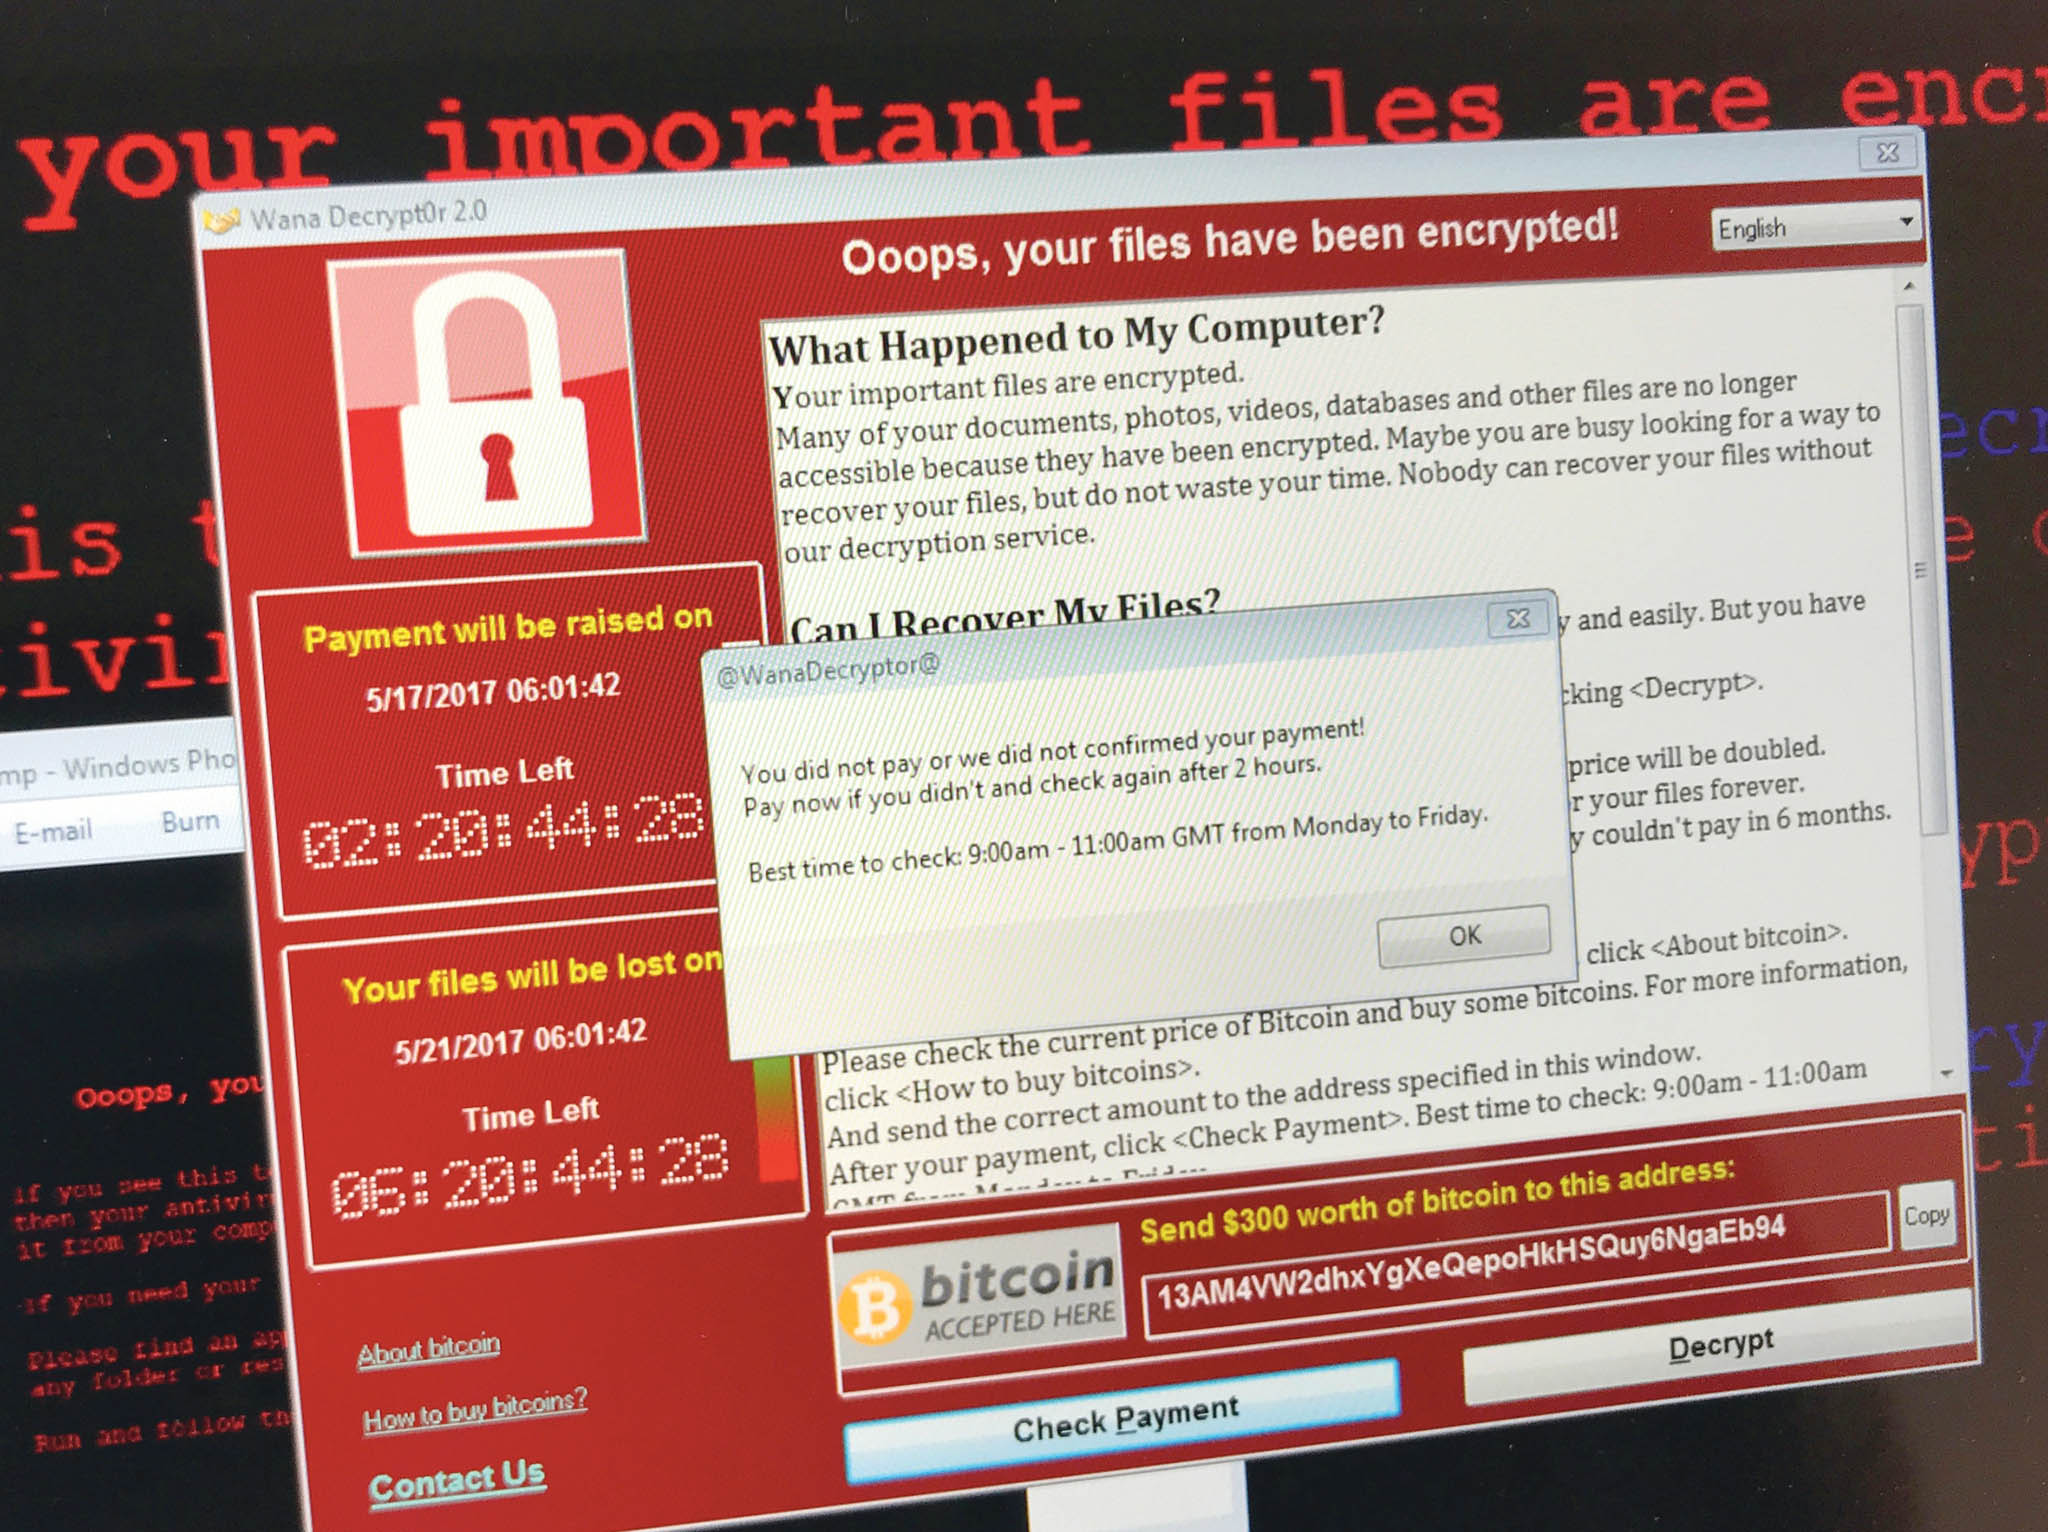 Taková obrazovka vítala uživatele poèítaèe s operaèním systémem Microsoft Windows, který byl napaden ransomwarem WannaCry. Výsledkem byla zašifrovaná data na pevném disku. Za dešifrování útoèníci žádali platbu v bitcoinech.